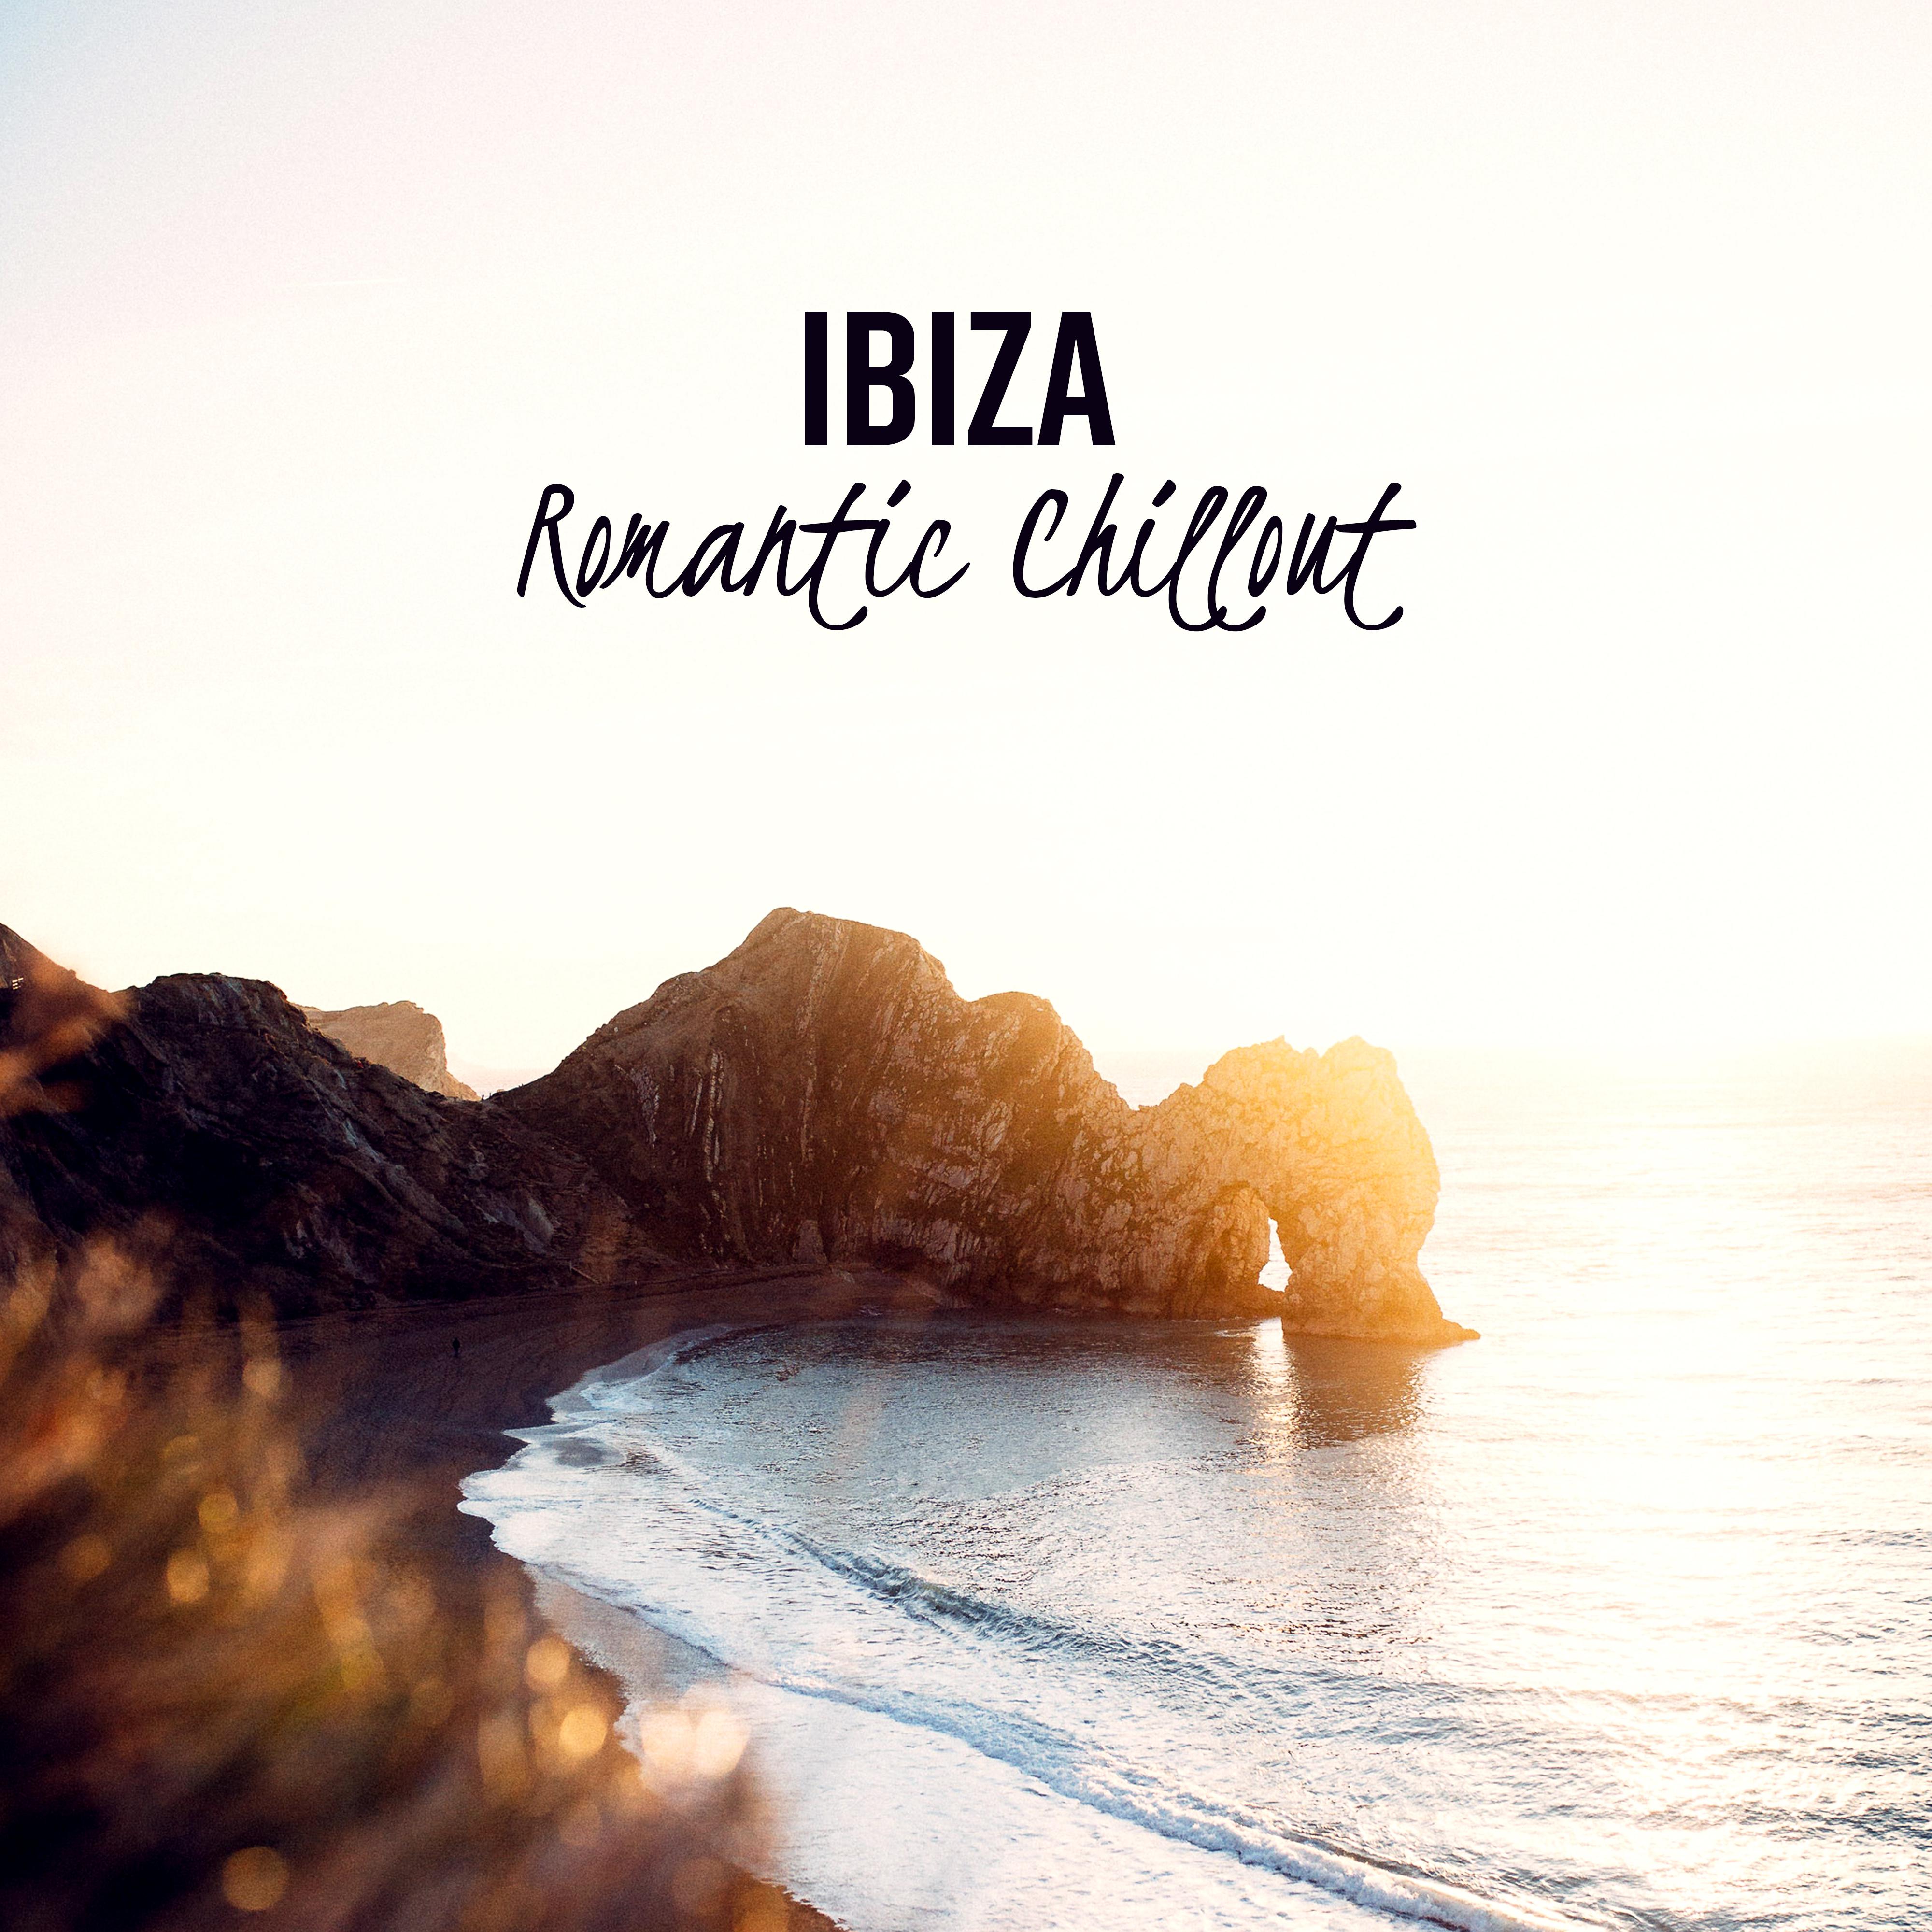 Ibiza Romantic Chillout